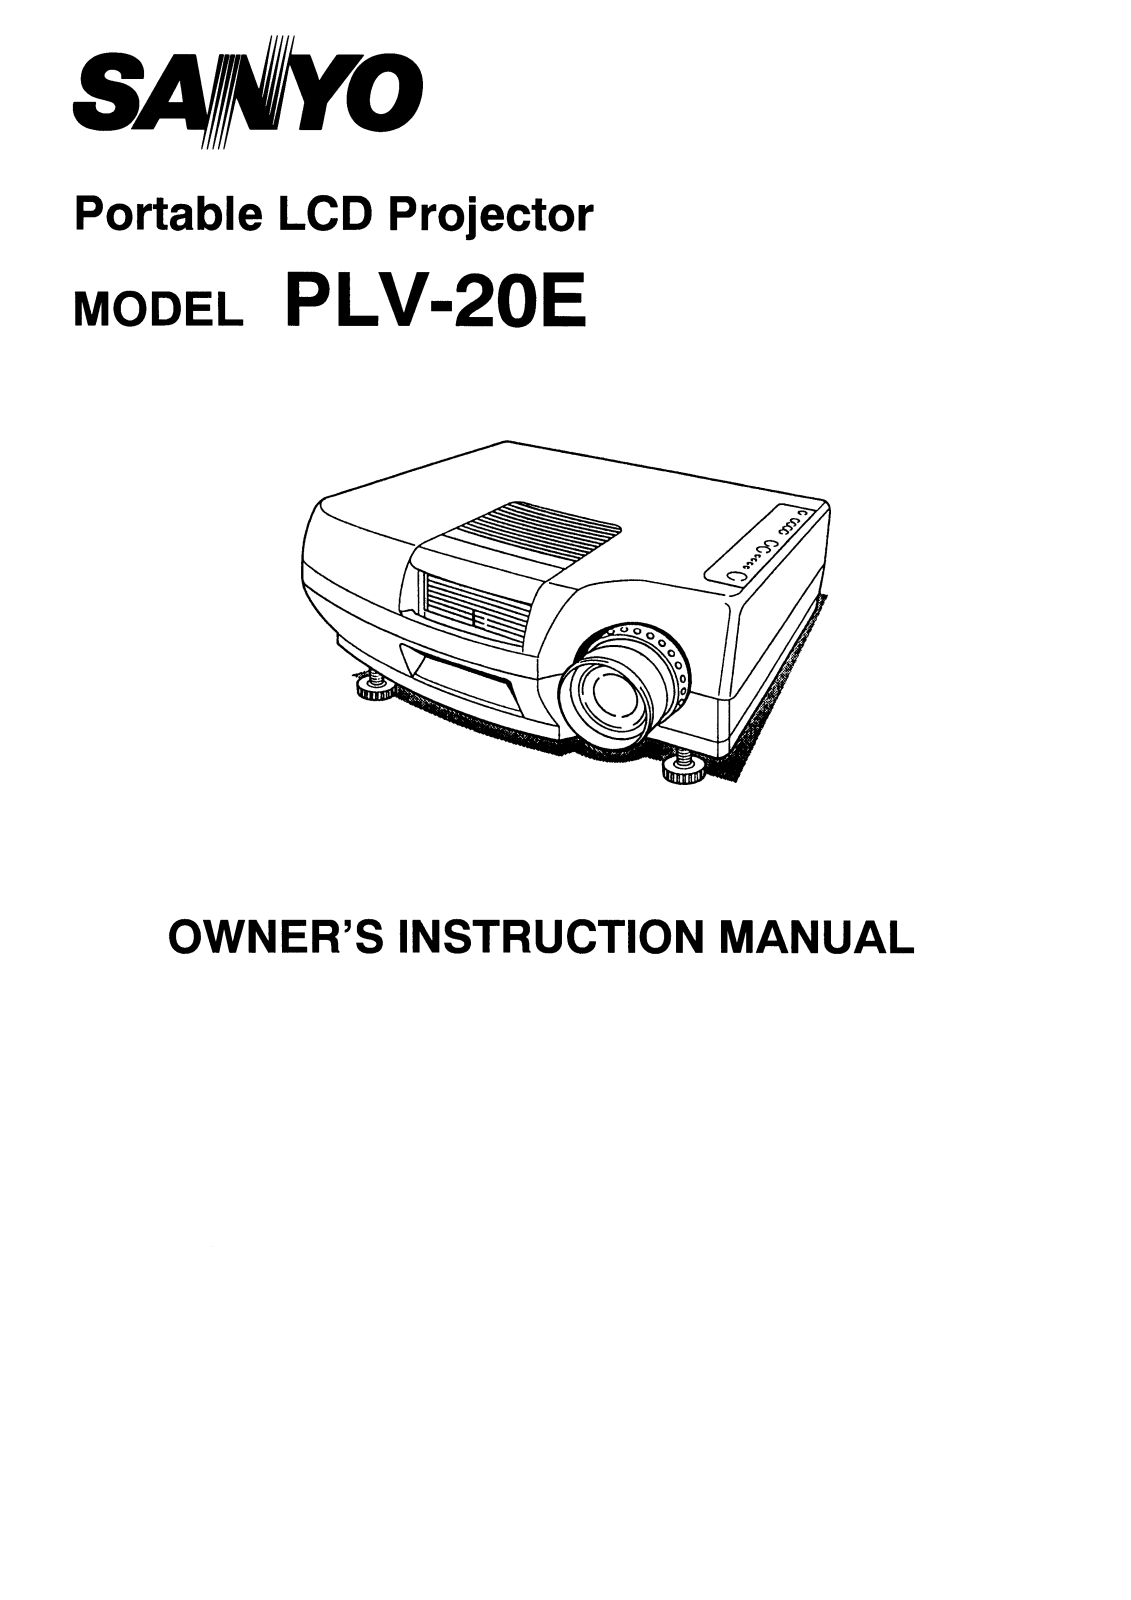 Sanyo PLV-20E Instruction Manual